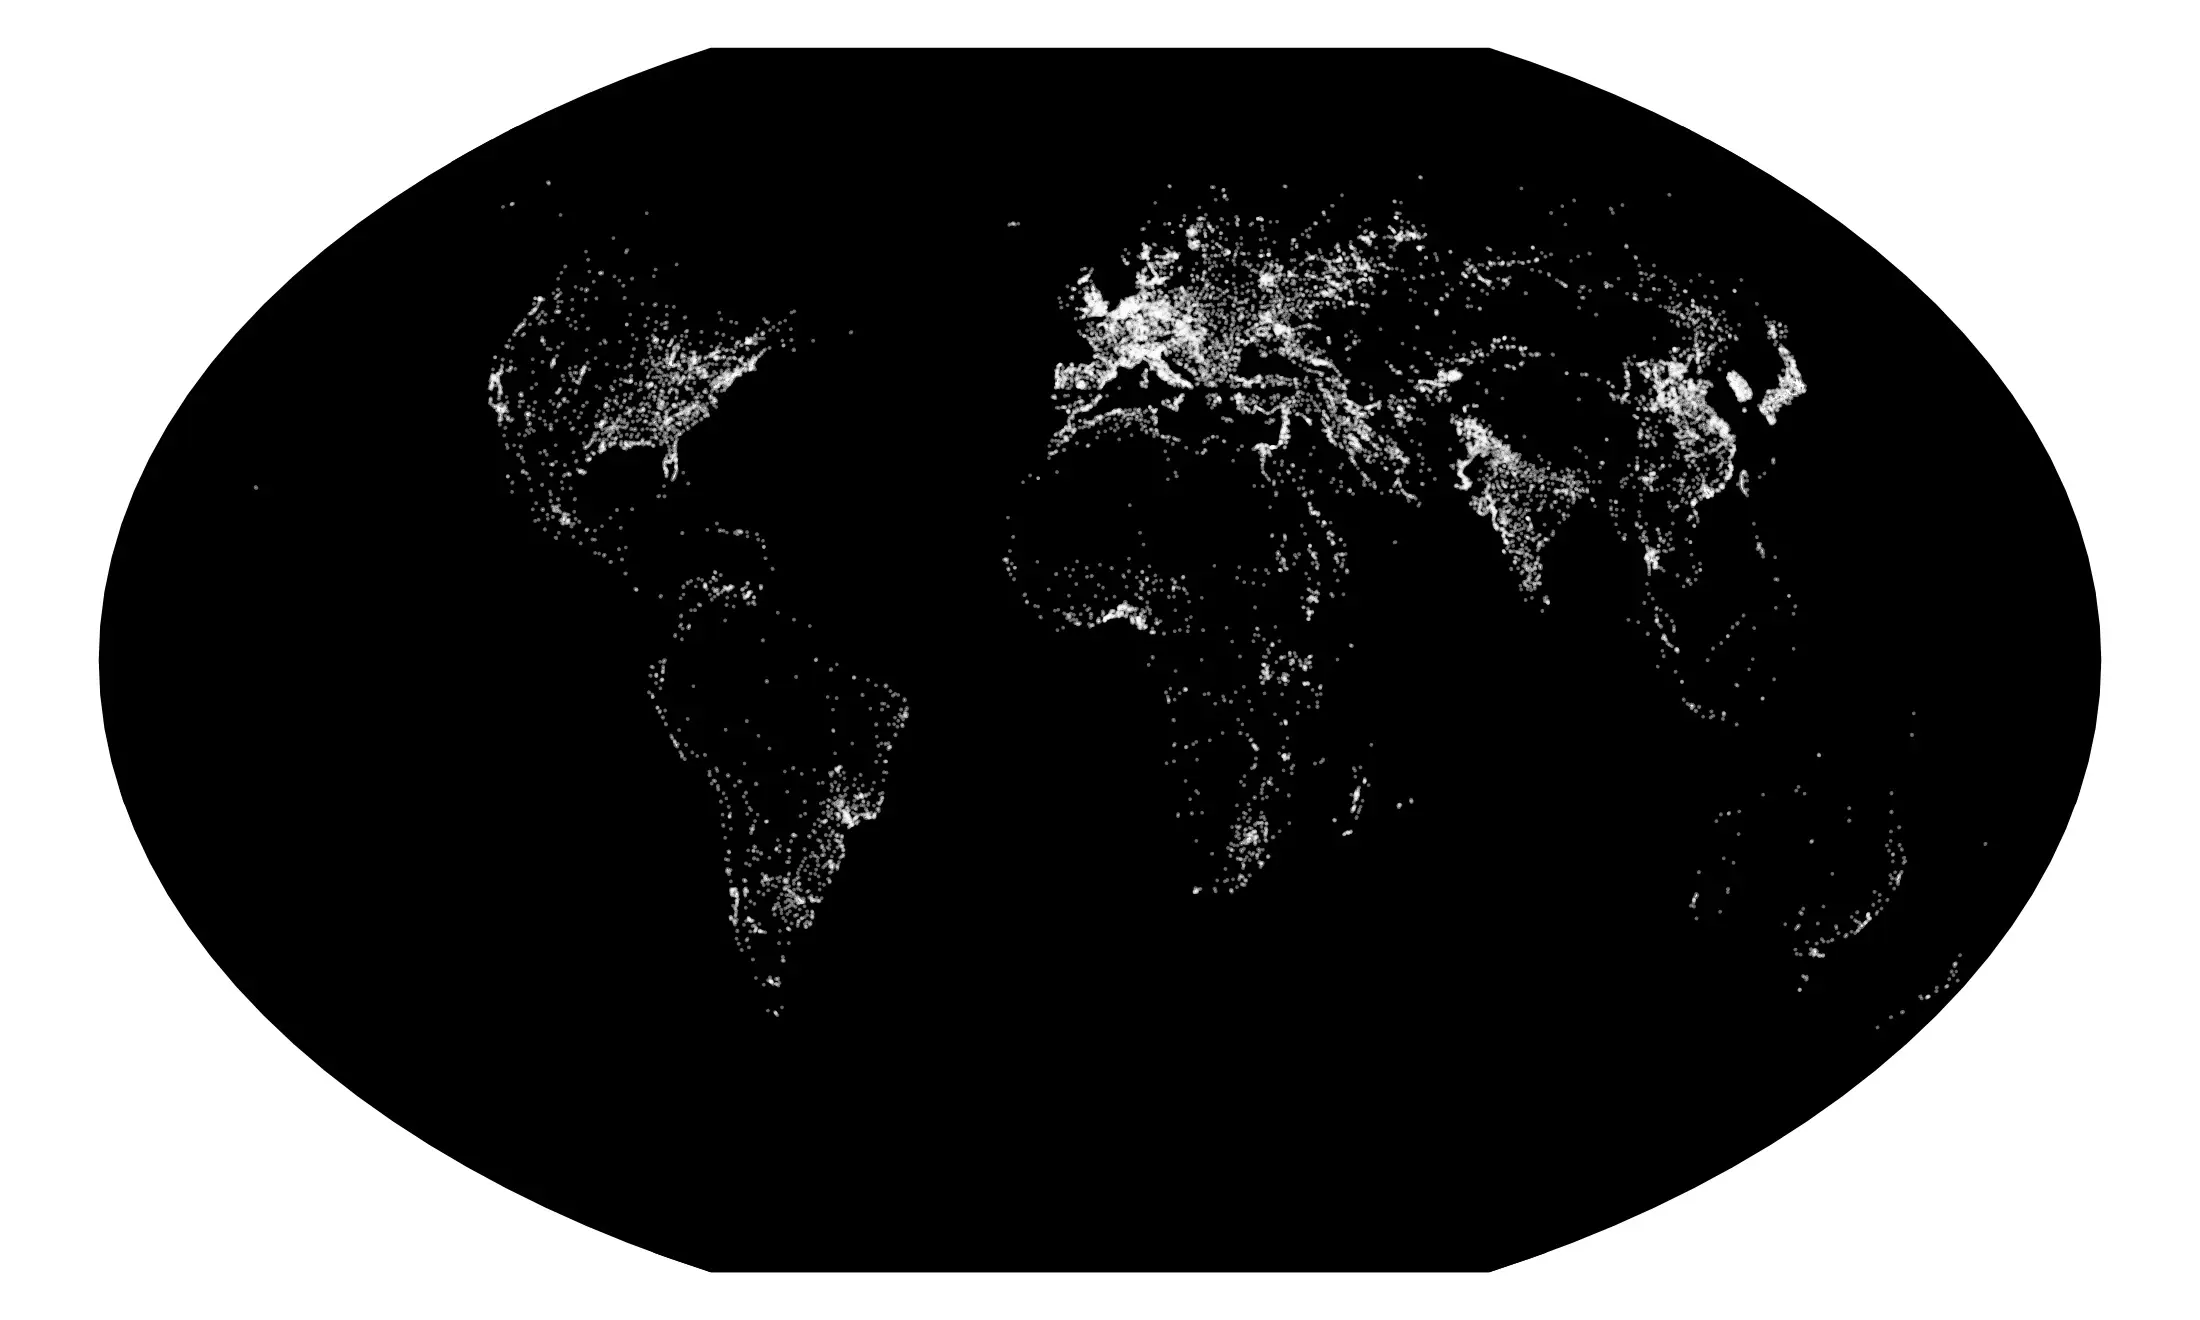 World map (Winkel Tripel projection)